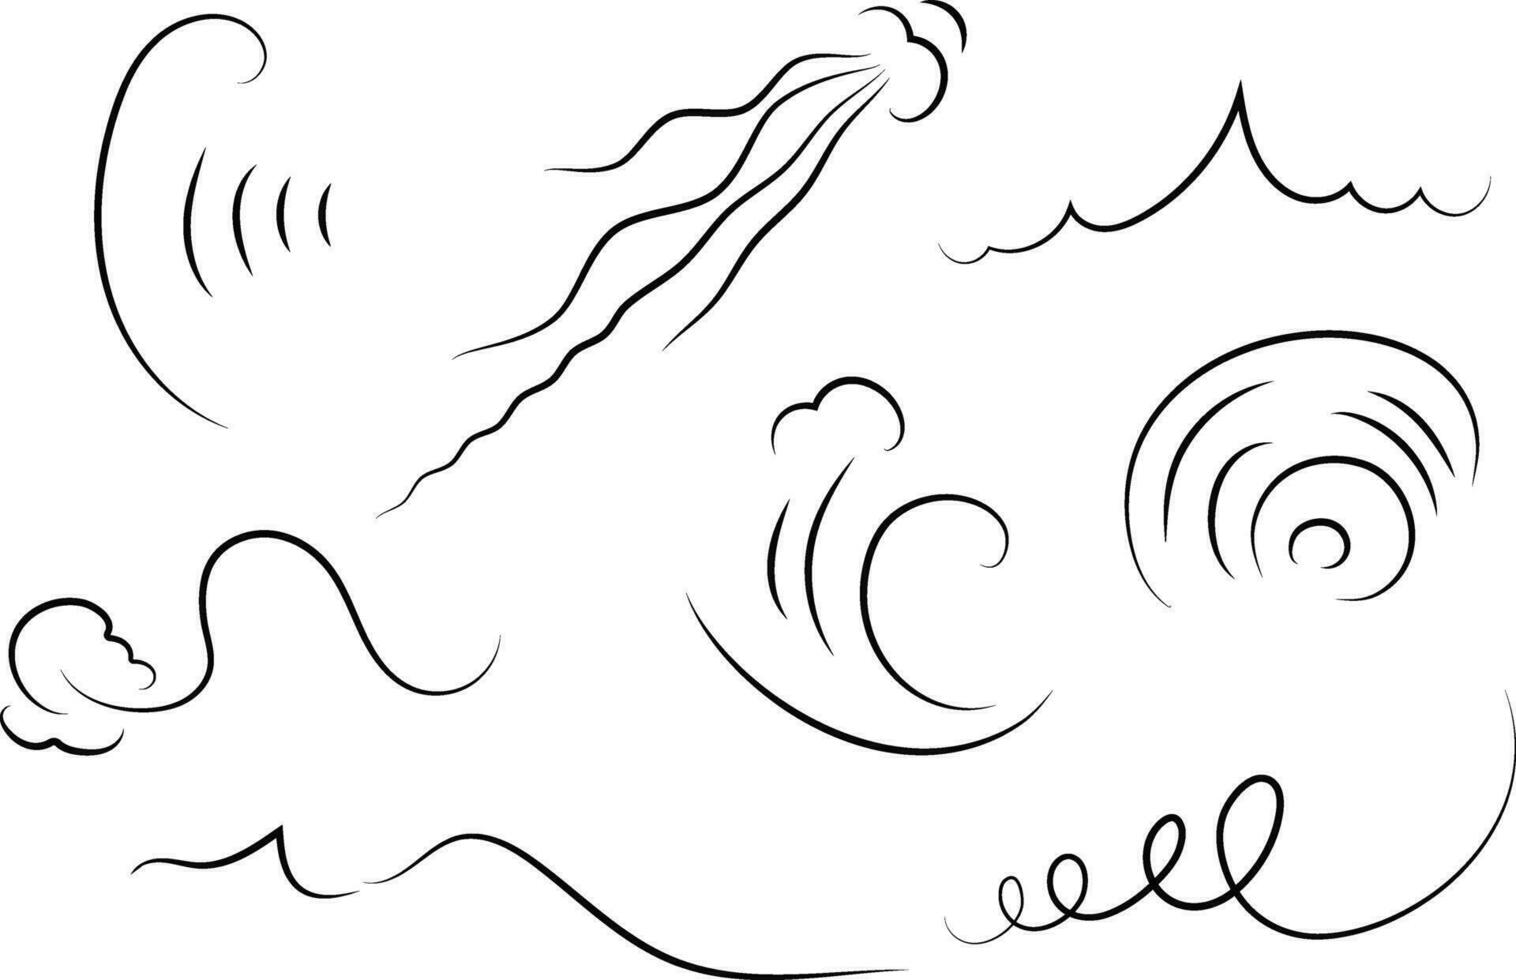 contorno dibujo de un aliento de viento.viento soplar conjunto en línea estilo.ola fluido ilustración con mano dibujado garabatear dibujos animados estilo. vector